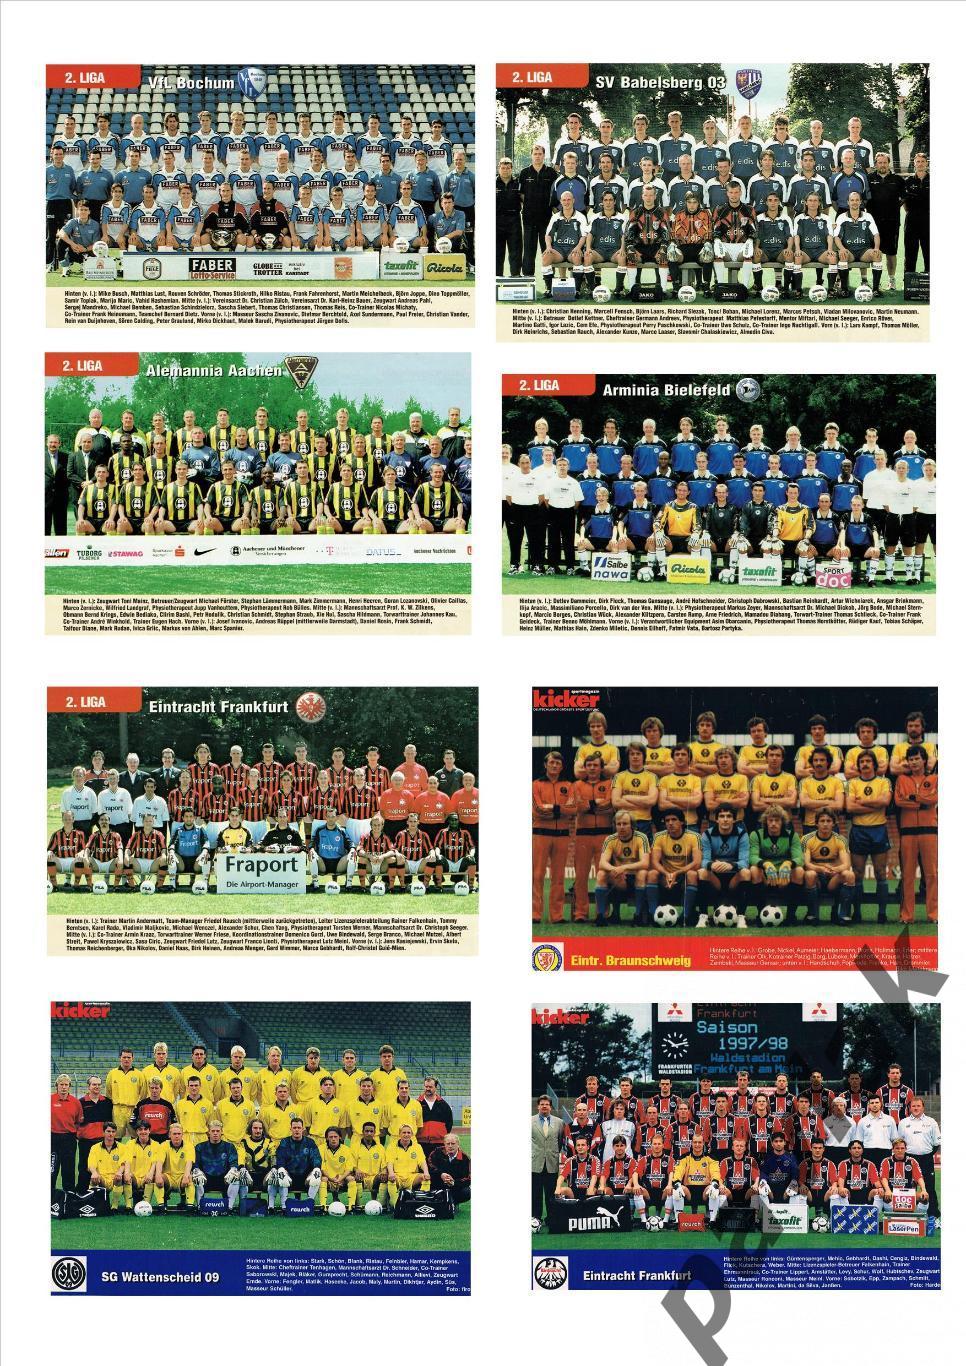 Постеры немецких клубов разных лет из журналов Kicker, Sport bild и NBI 43 шт.